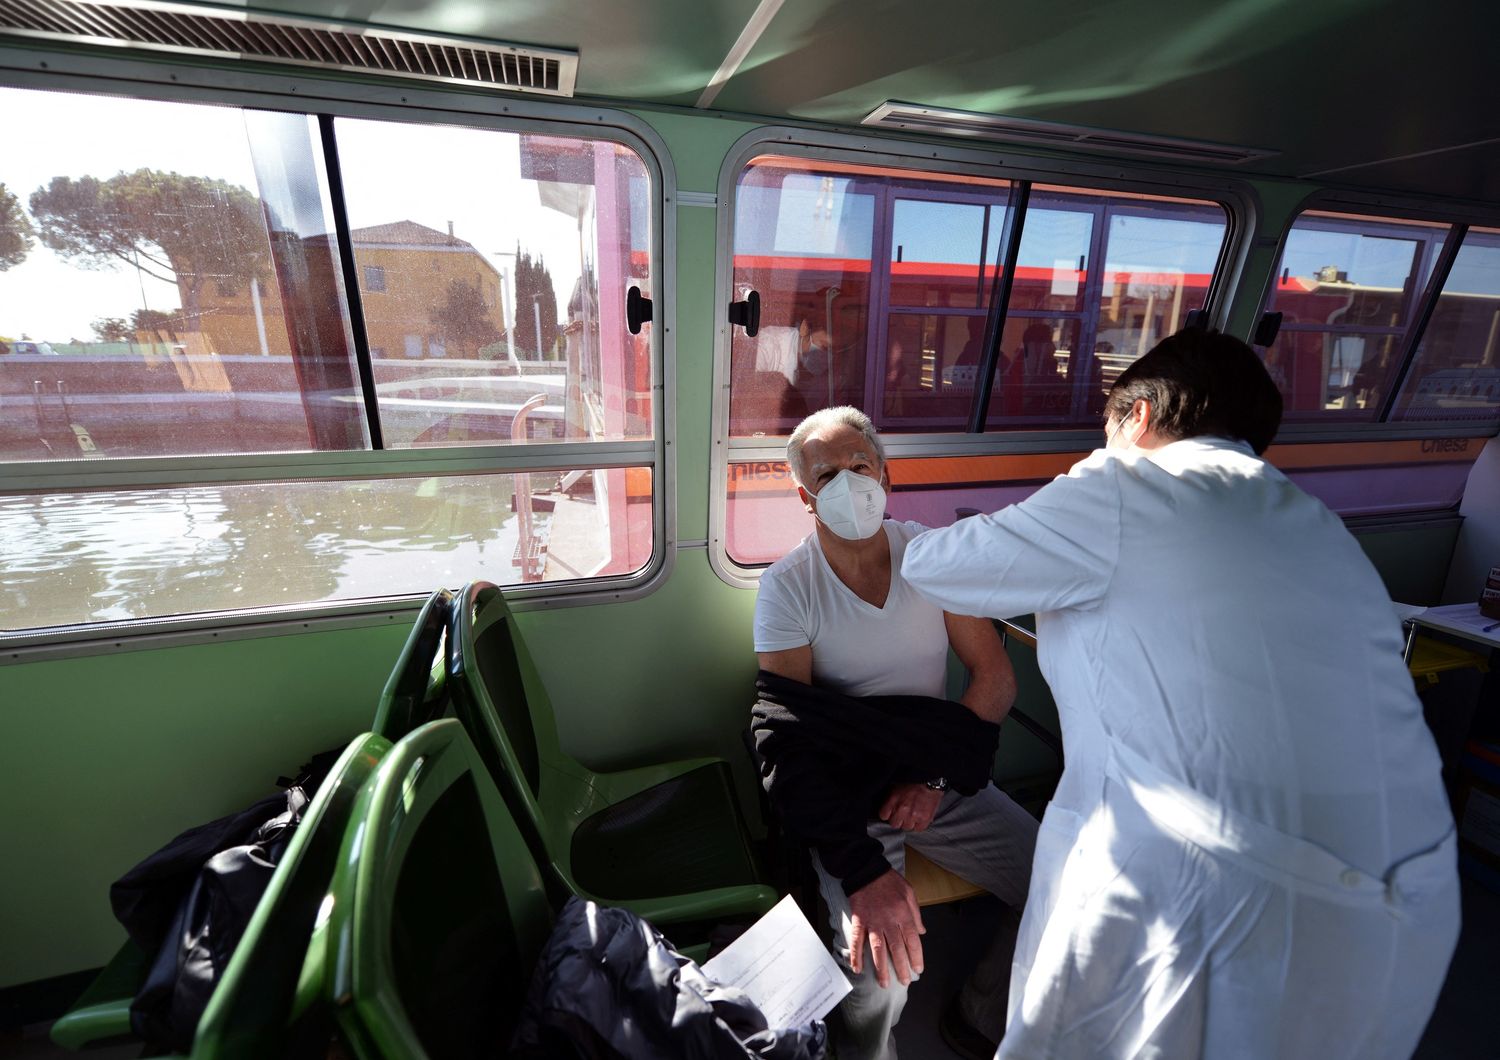 Le vaccinazioni a bordo di un vaporetto a Venezia